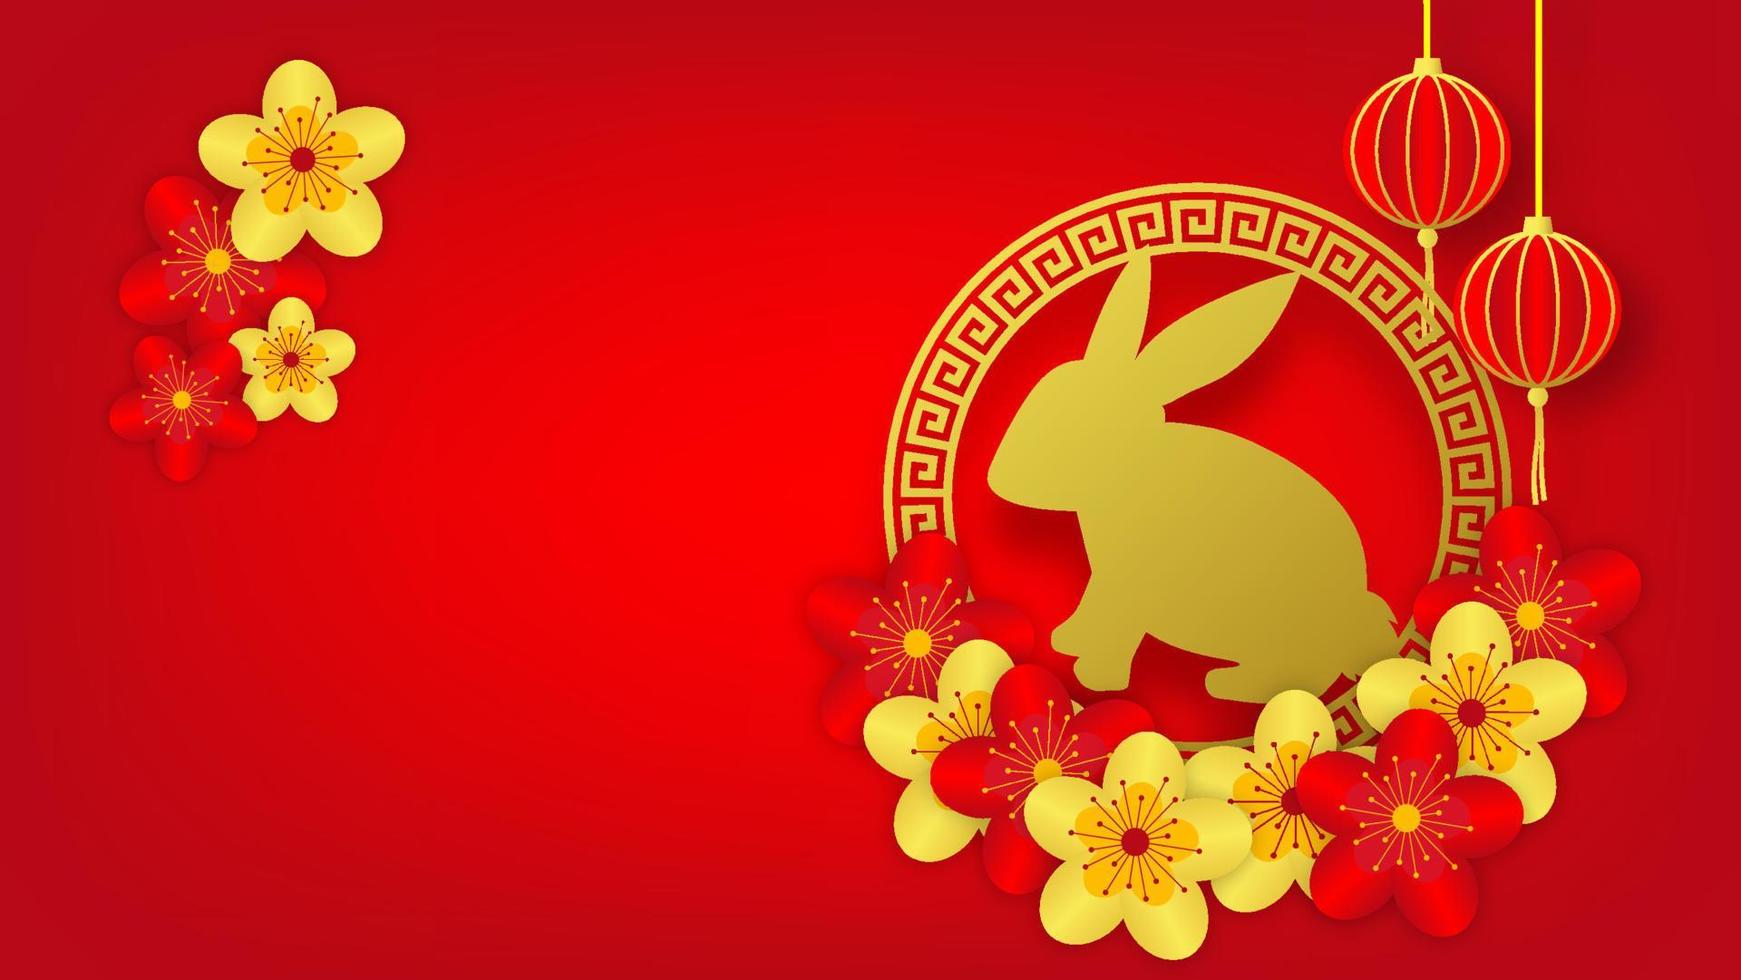 conceito de ano novo lunar. coelho de ouro com lanternas e flor da sorte decorativa em fundo vermelho com espaço em branco vetor